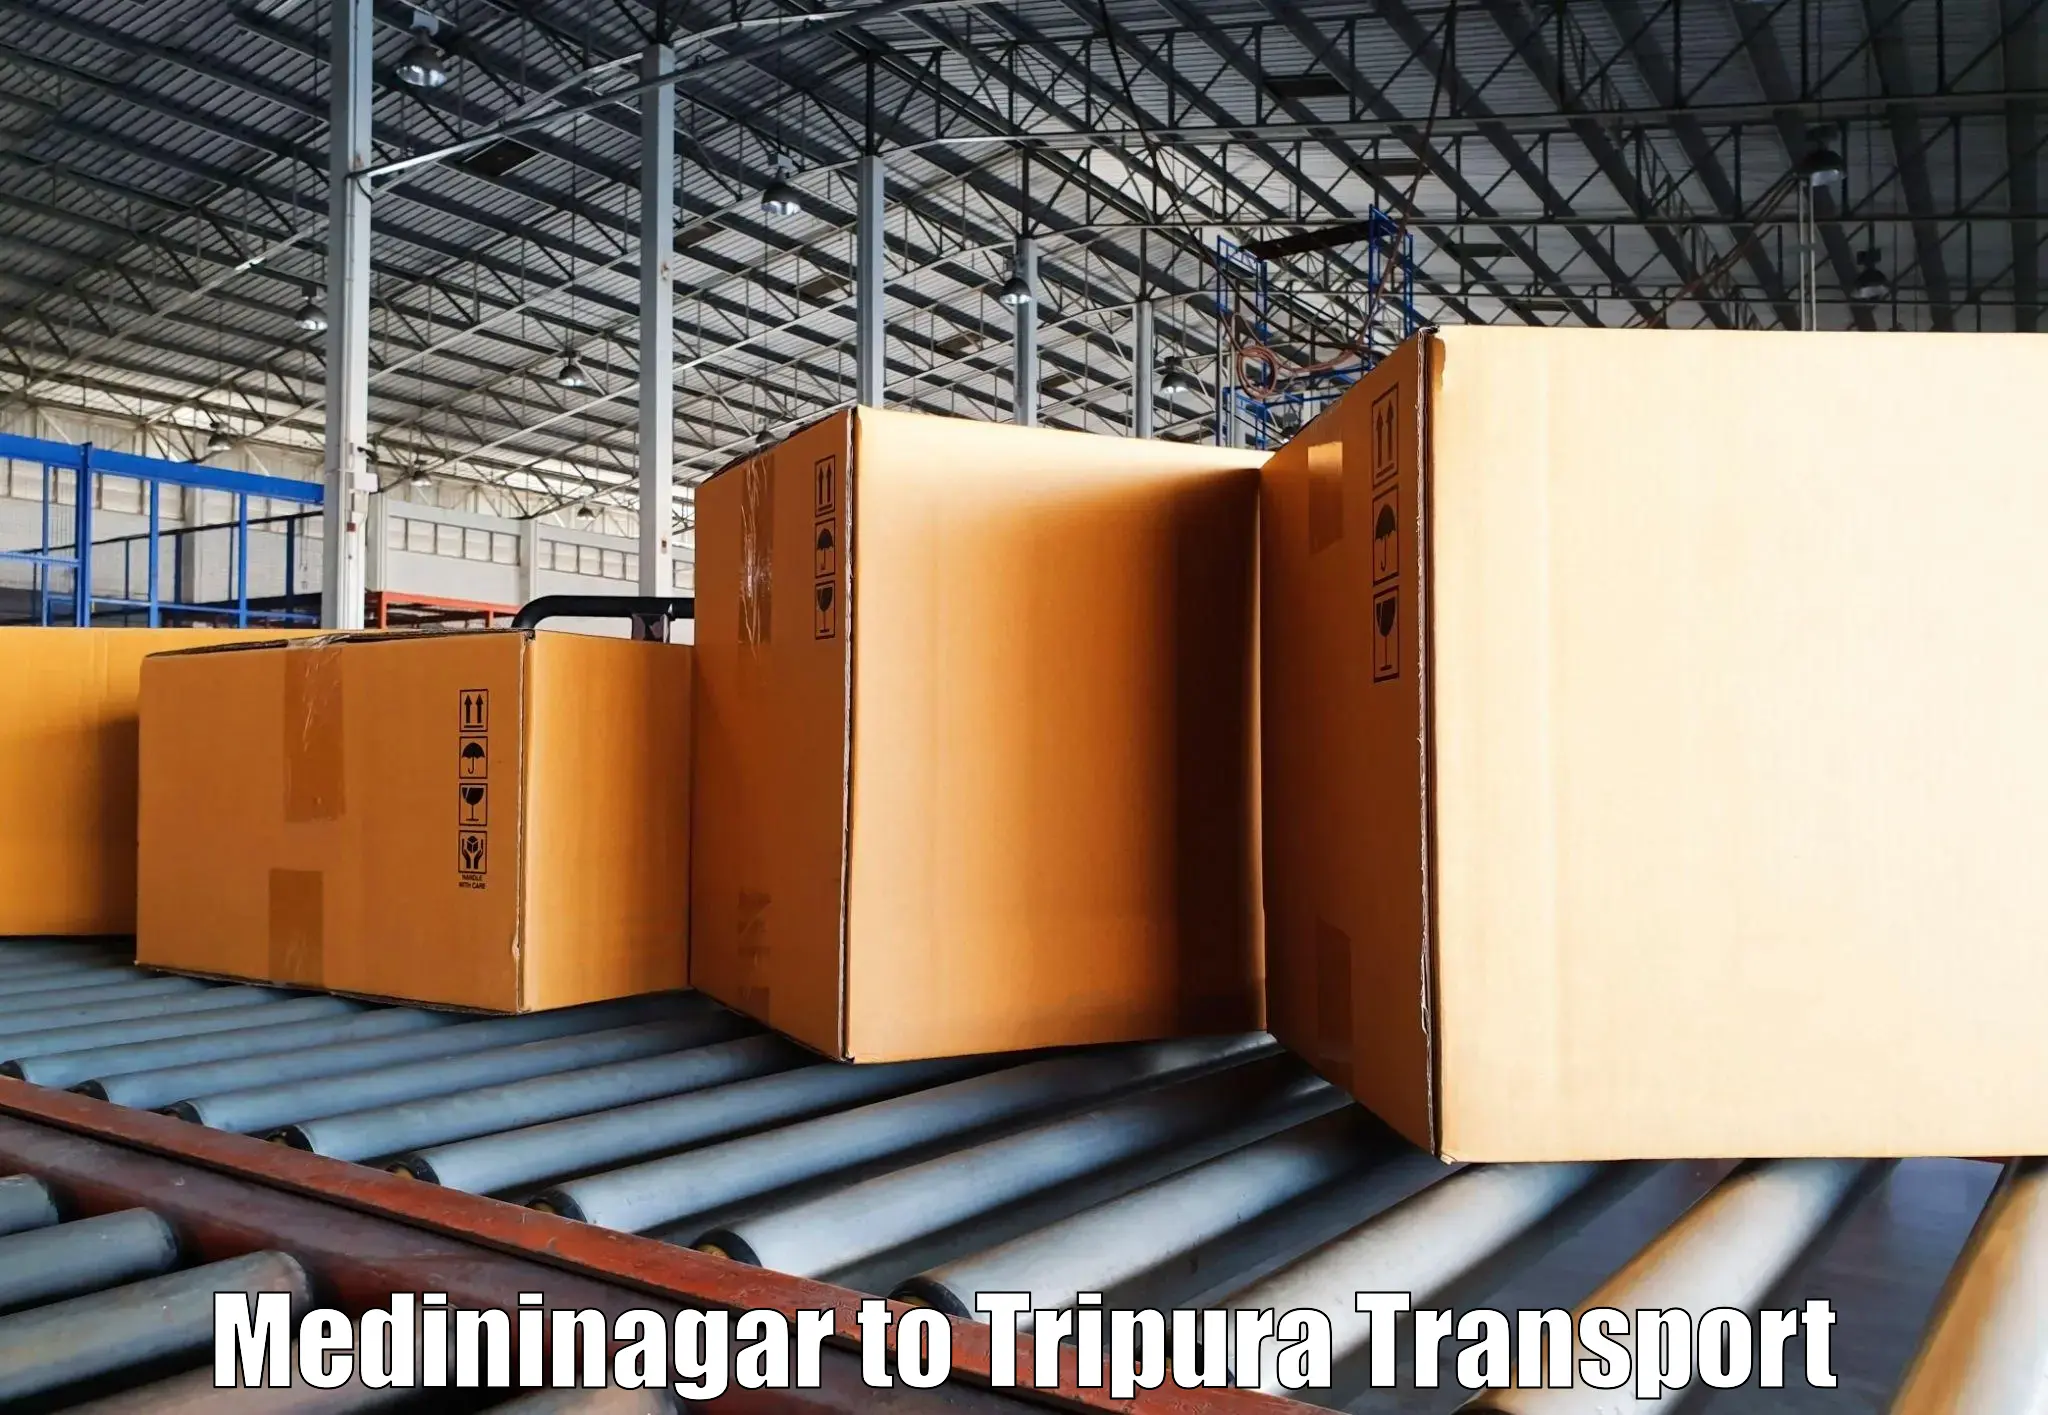 Daily parcel service transport Medininagar to Manughat